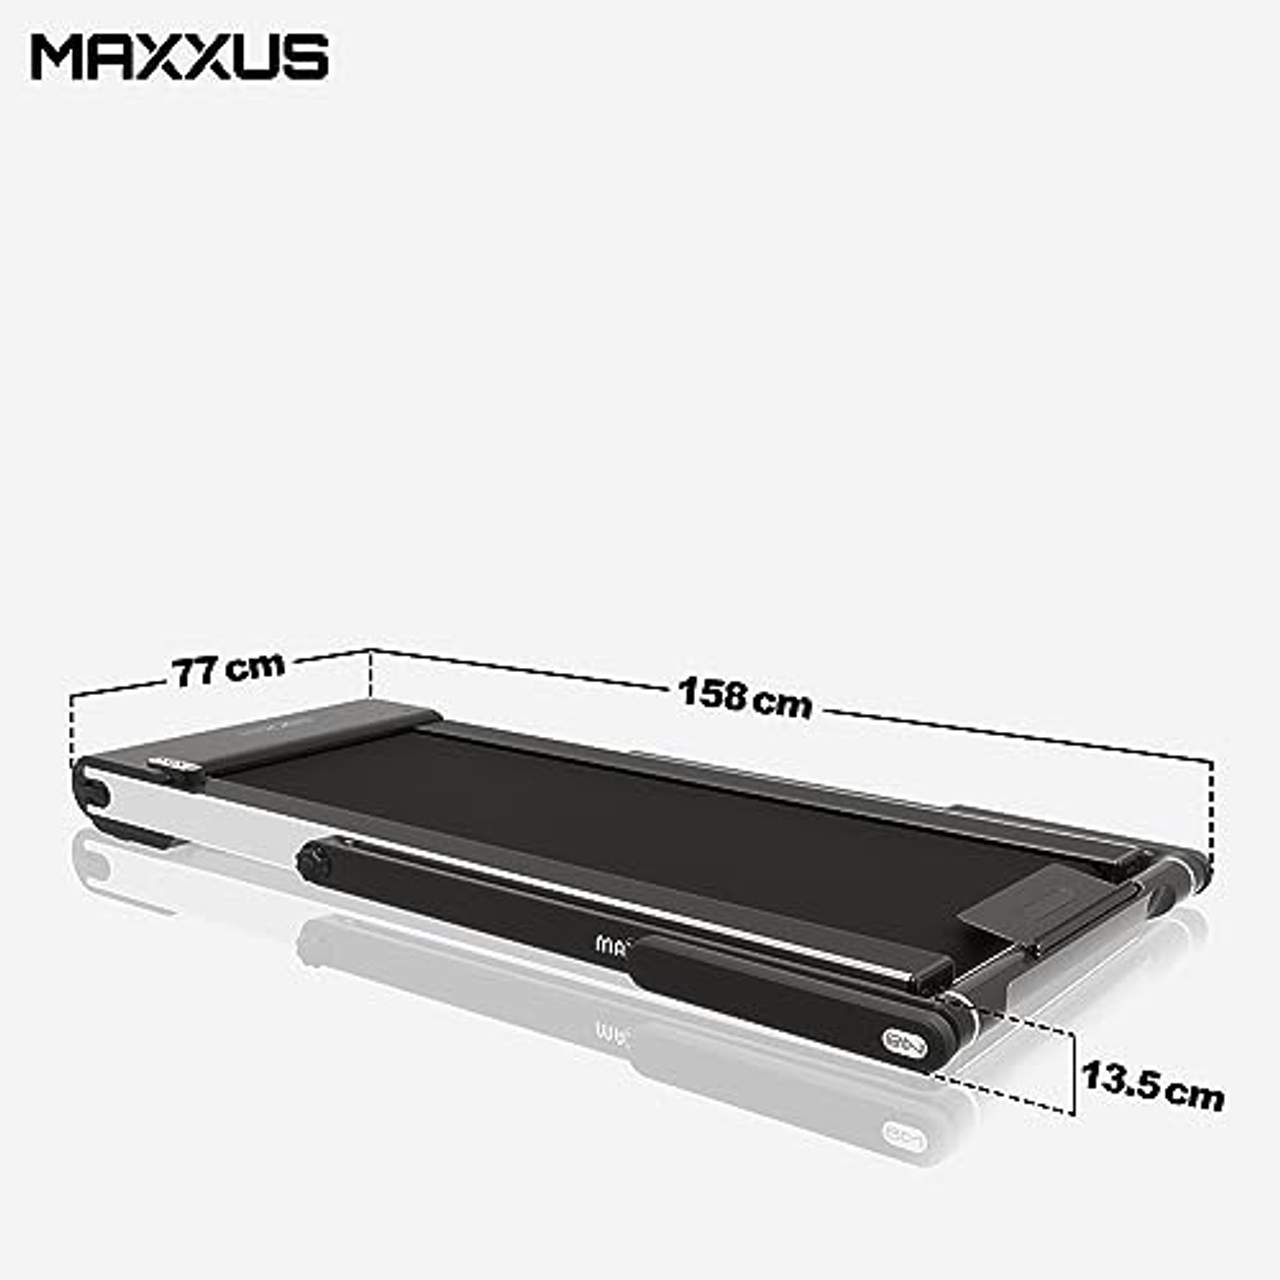 Maxxus Laufband M8 elektrisch